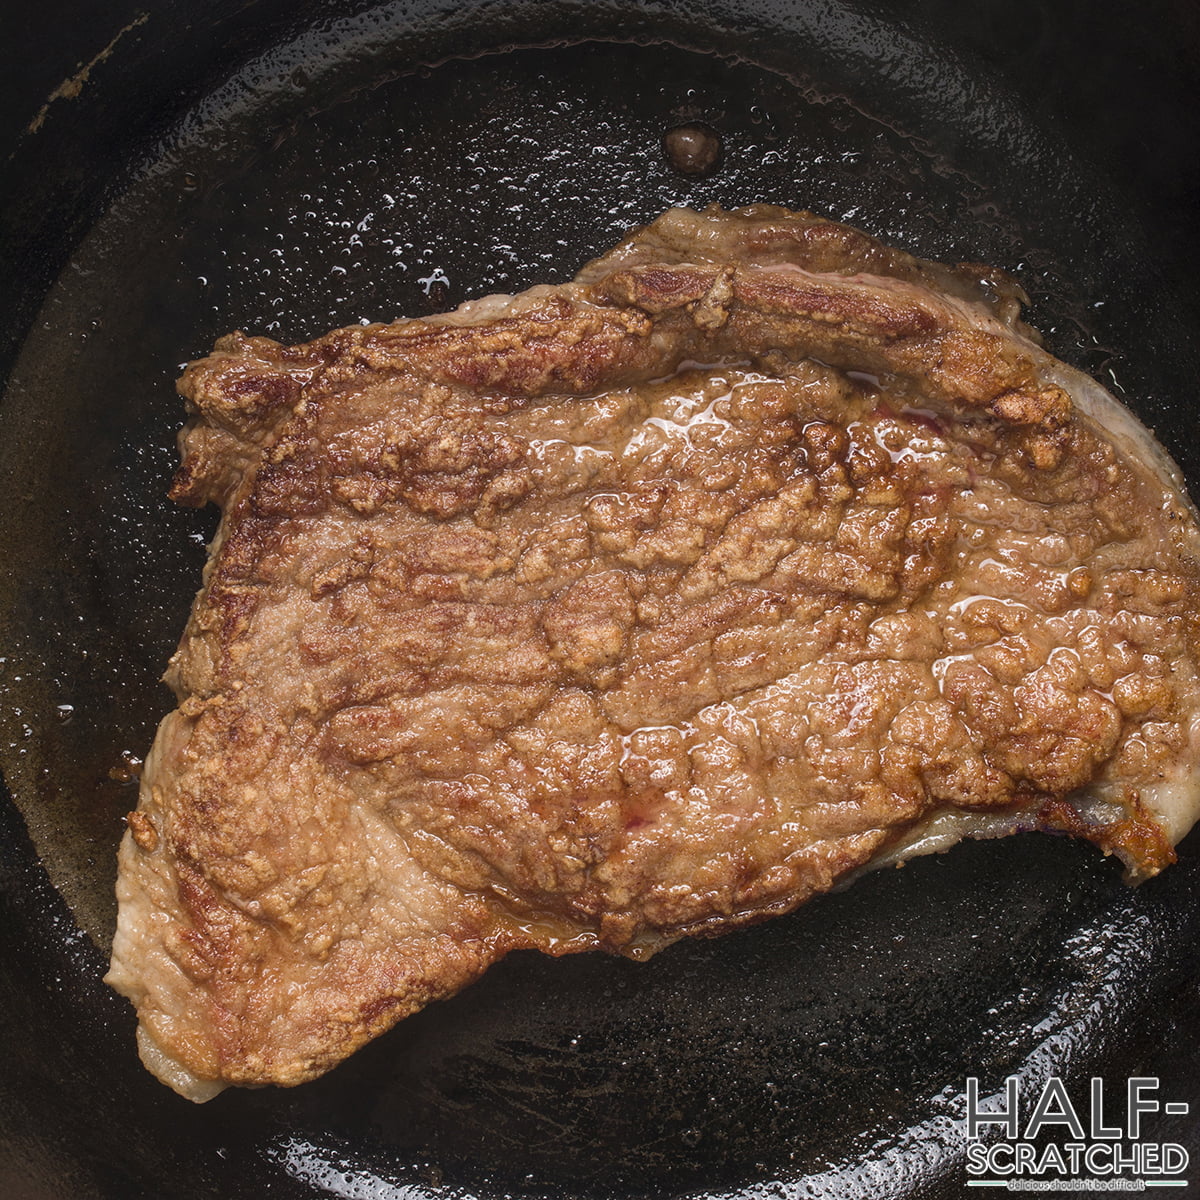 Golden brown steak